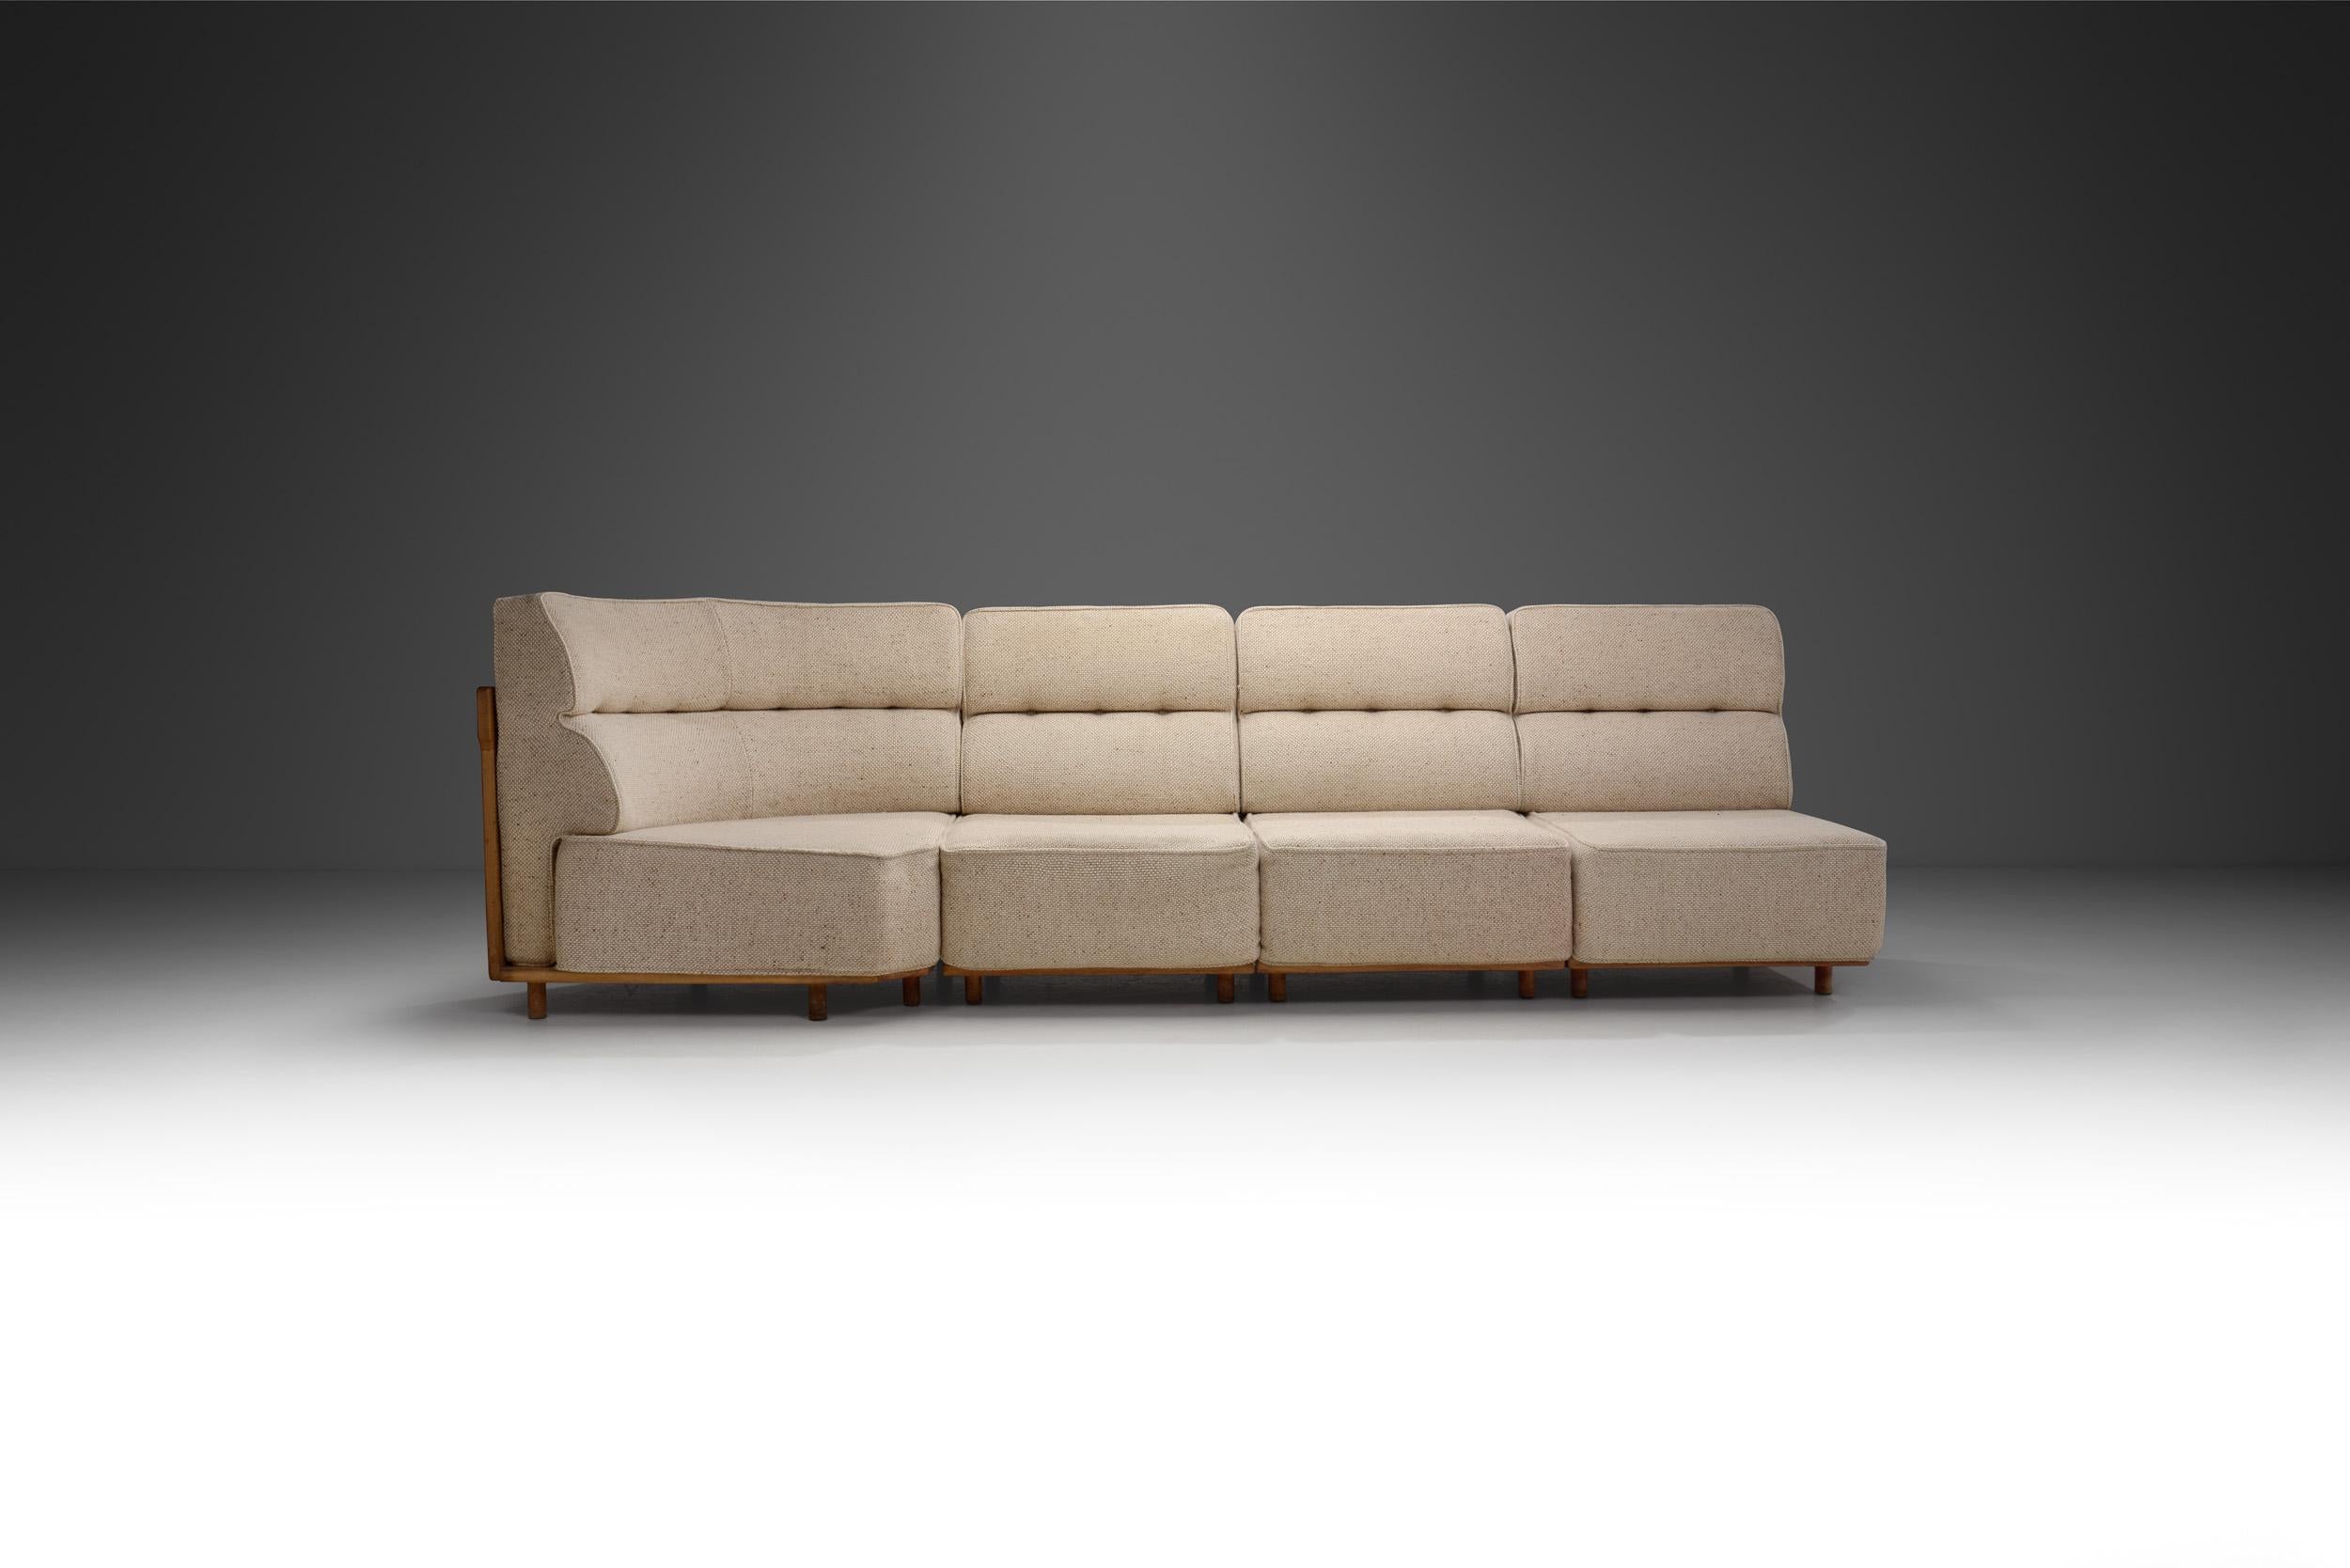 Le duo de designers français Robert Guillerme et Jacques Chambron est connu pour ses meubles en chêne massif de haute qualité créés pour leur propre entreprise, Votre Maison. Comme la plupart de leurs créations, ce modèle de canapé présente un beau